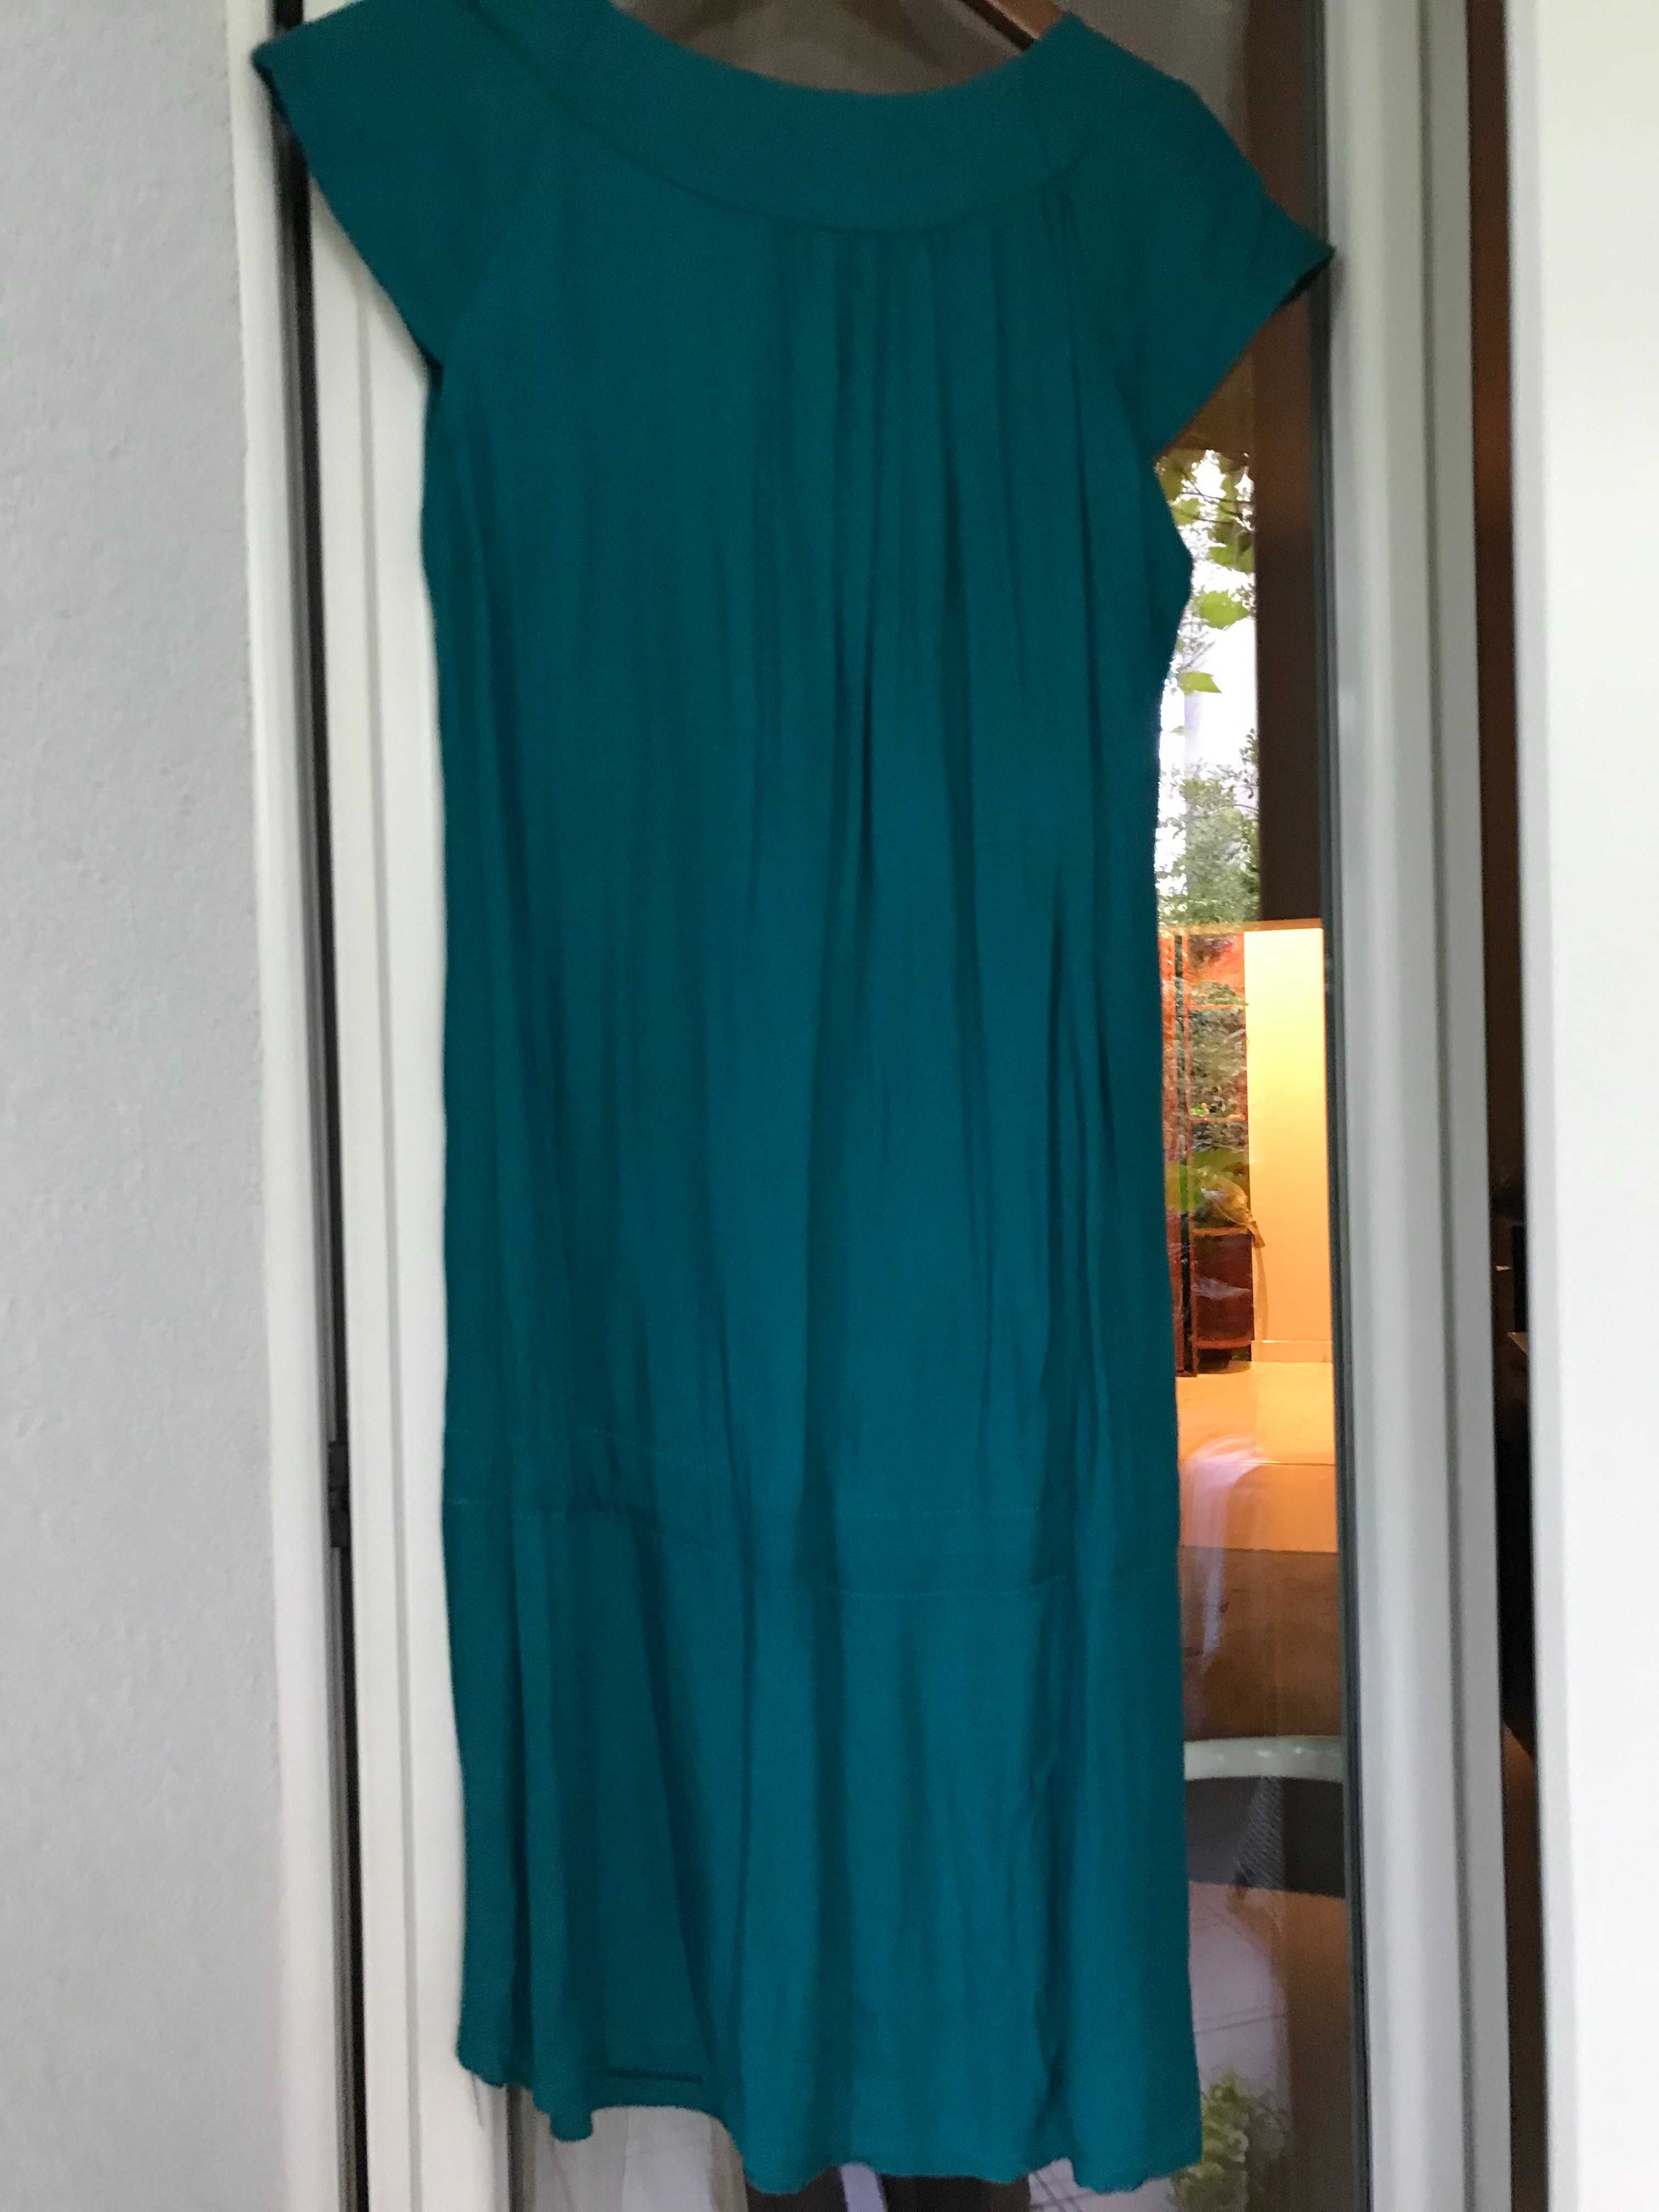 turkusowo zielona sukienka bez rękawów